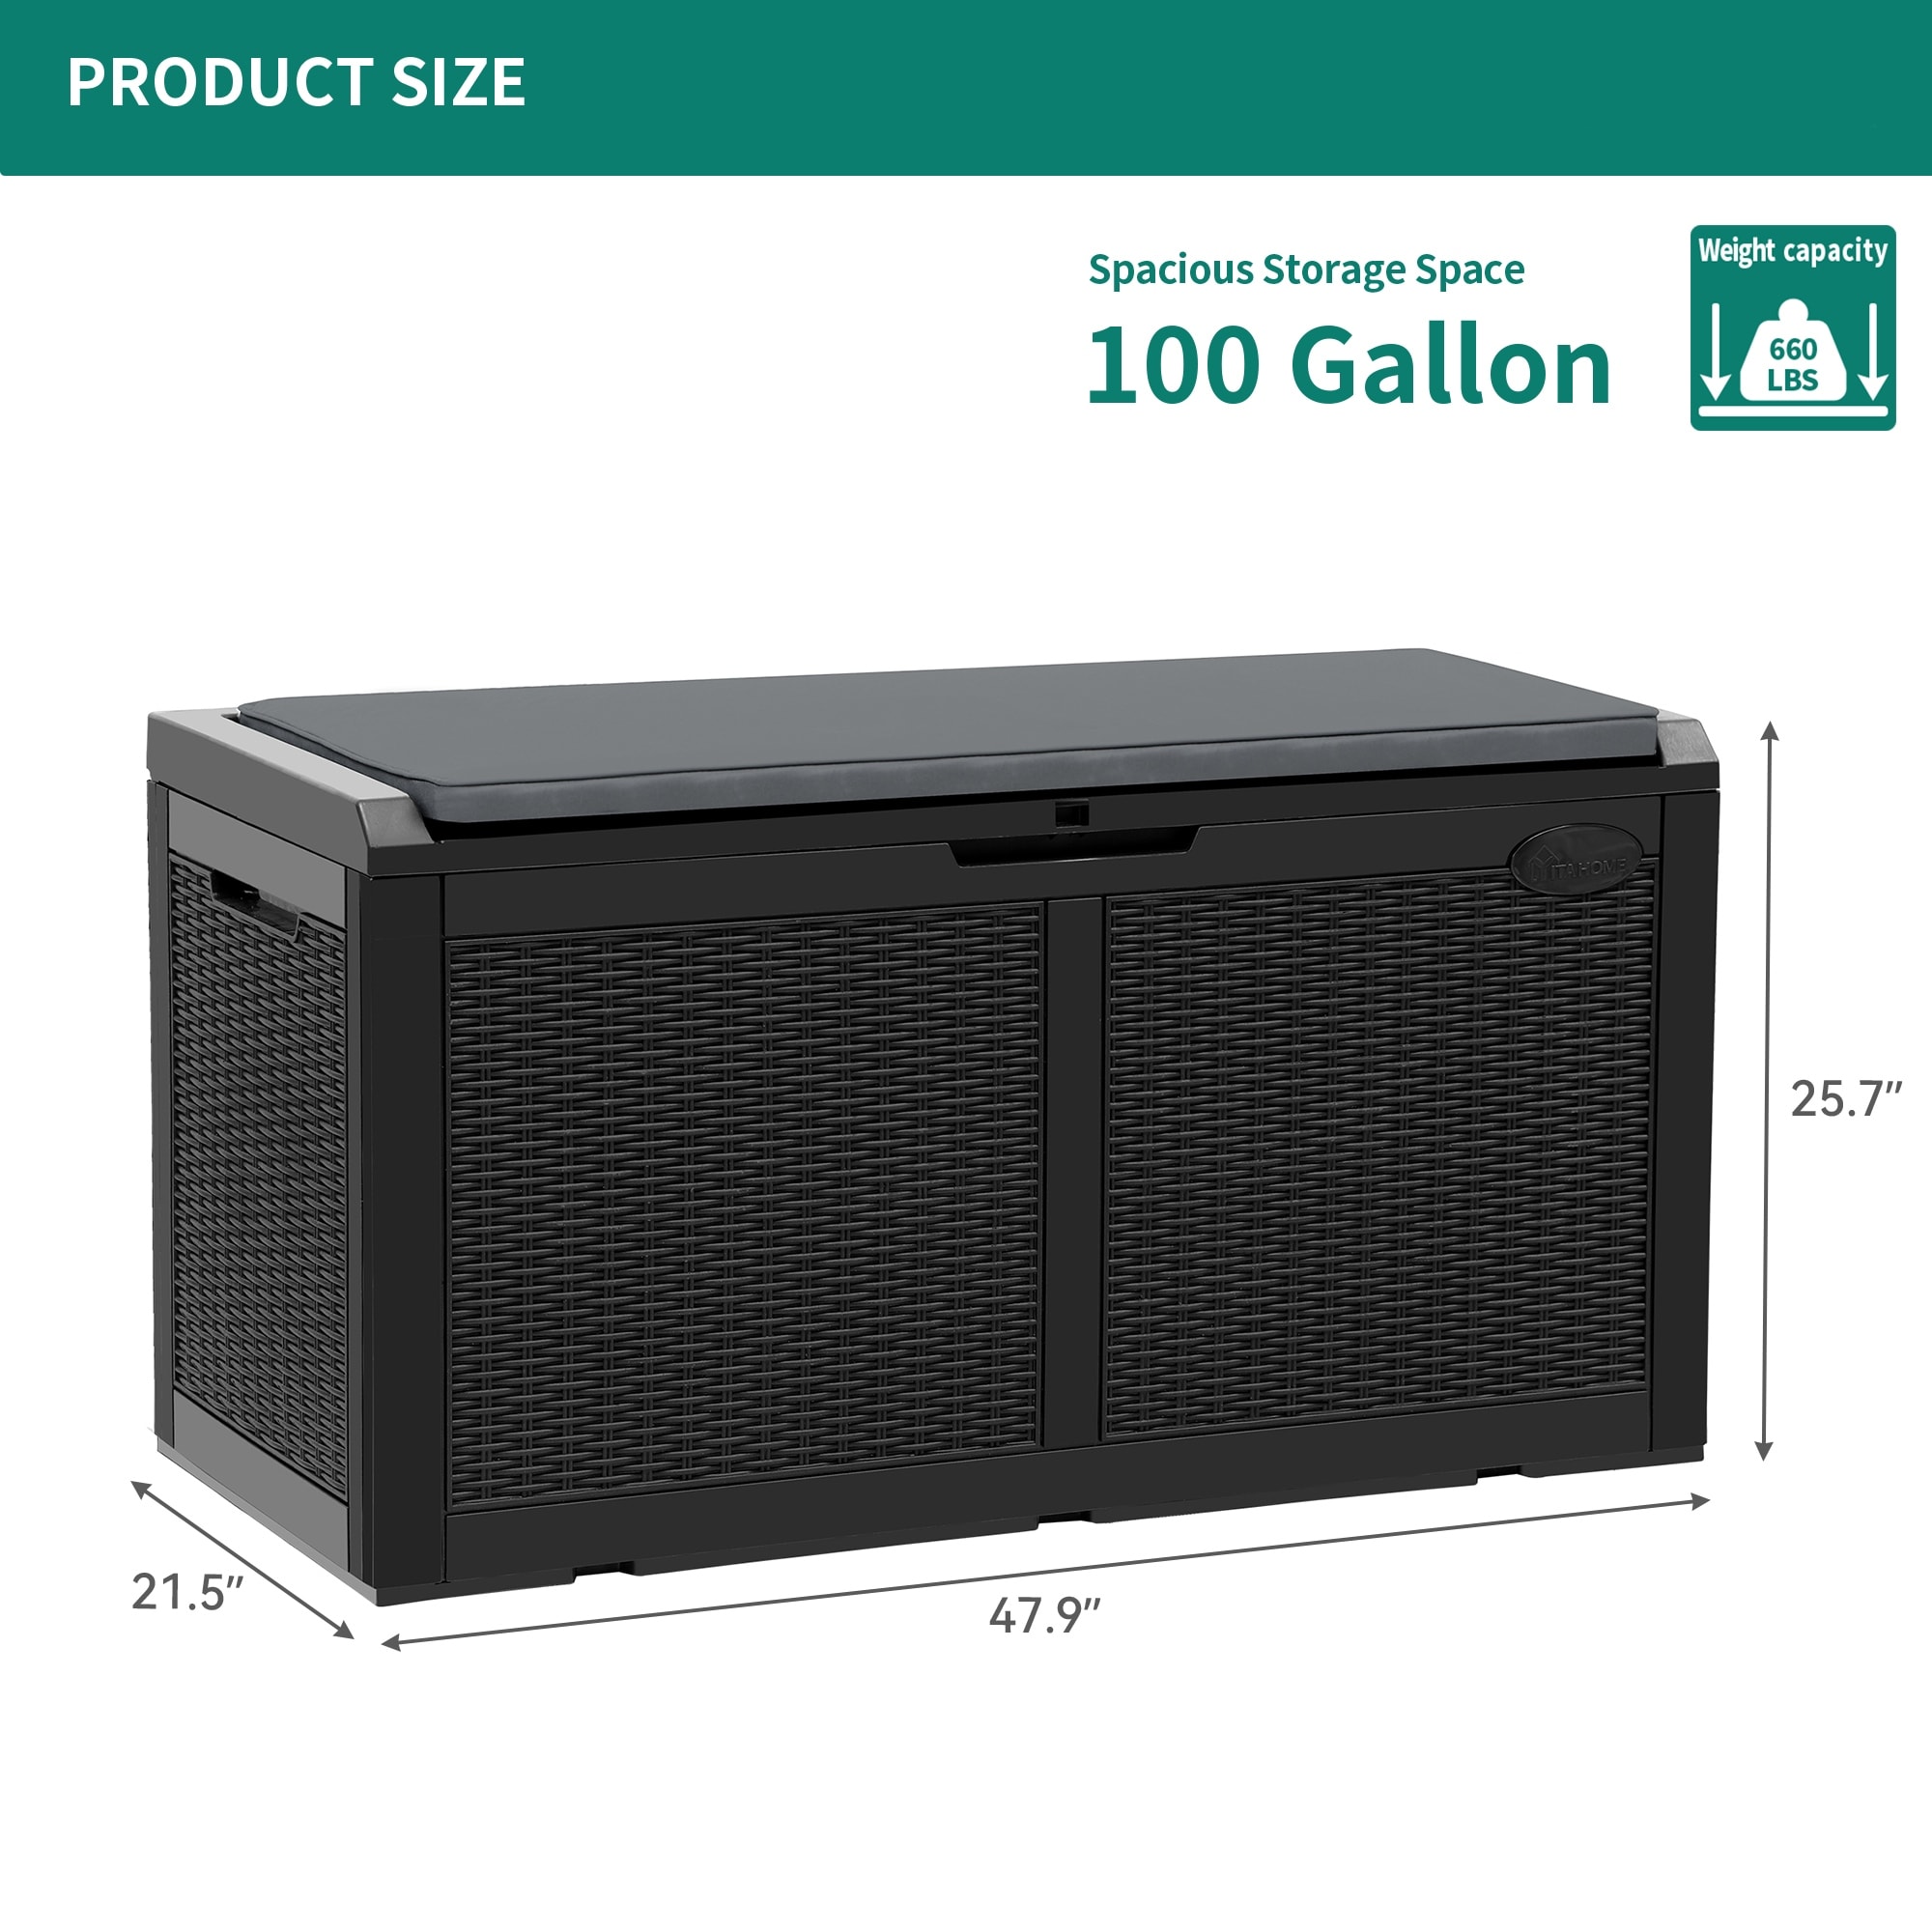 Zenova 52-Gallon Small Deck Box Outdoor Storage Container - 52